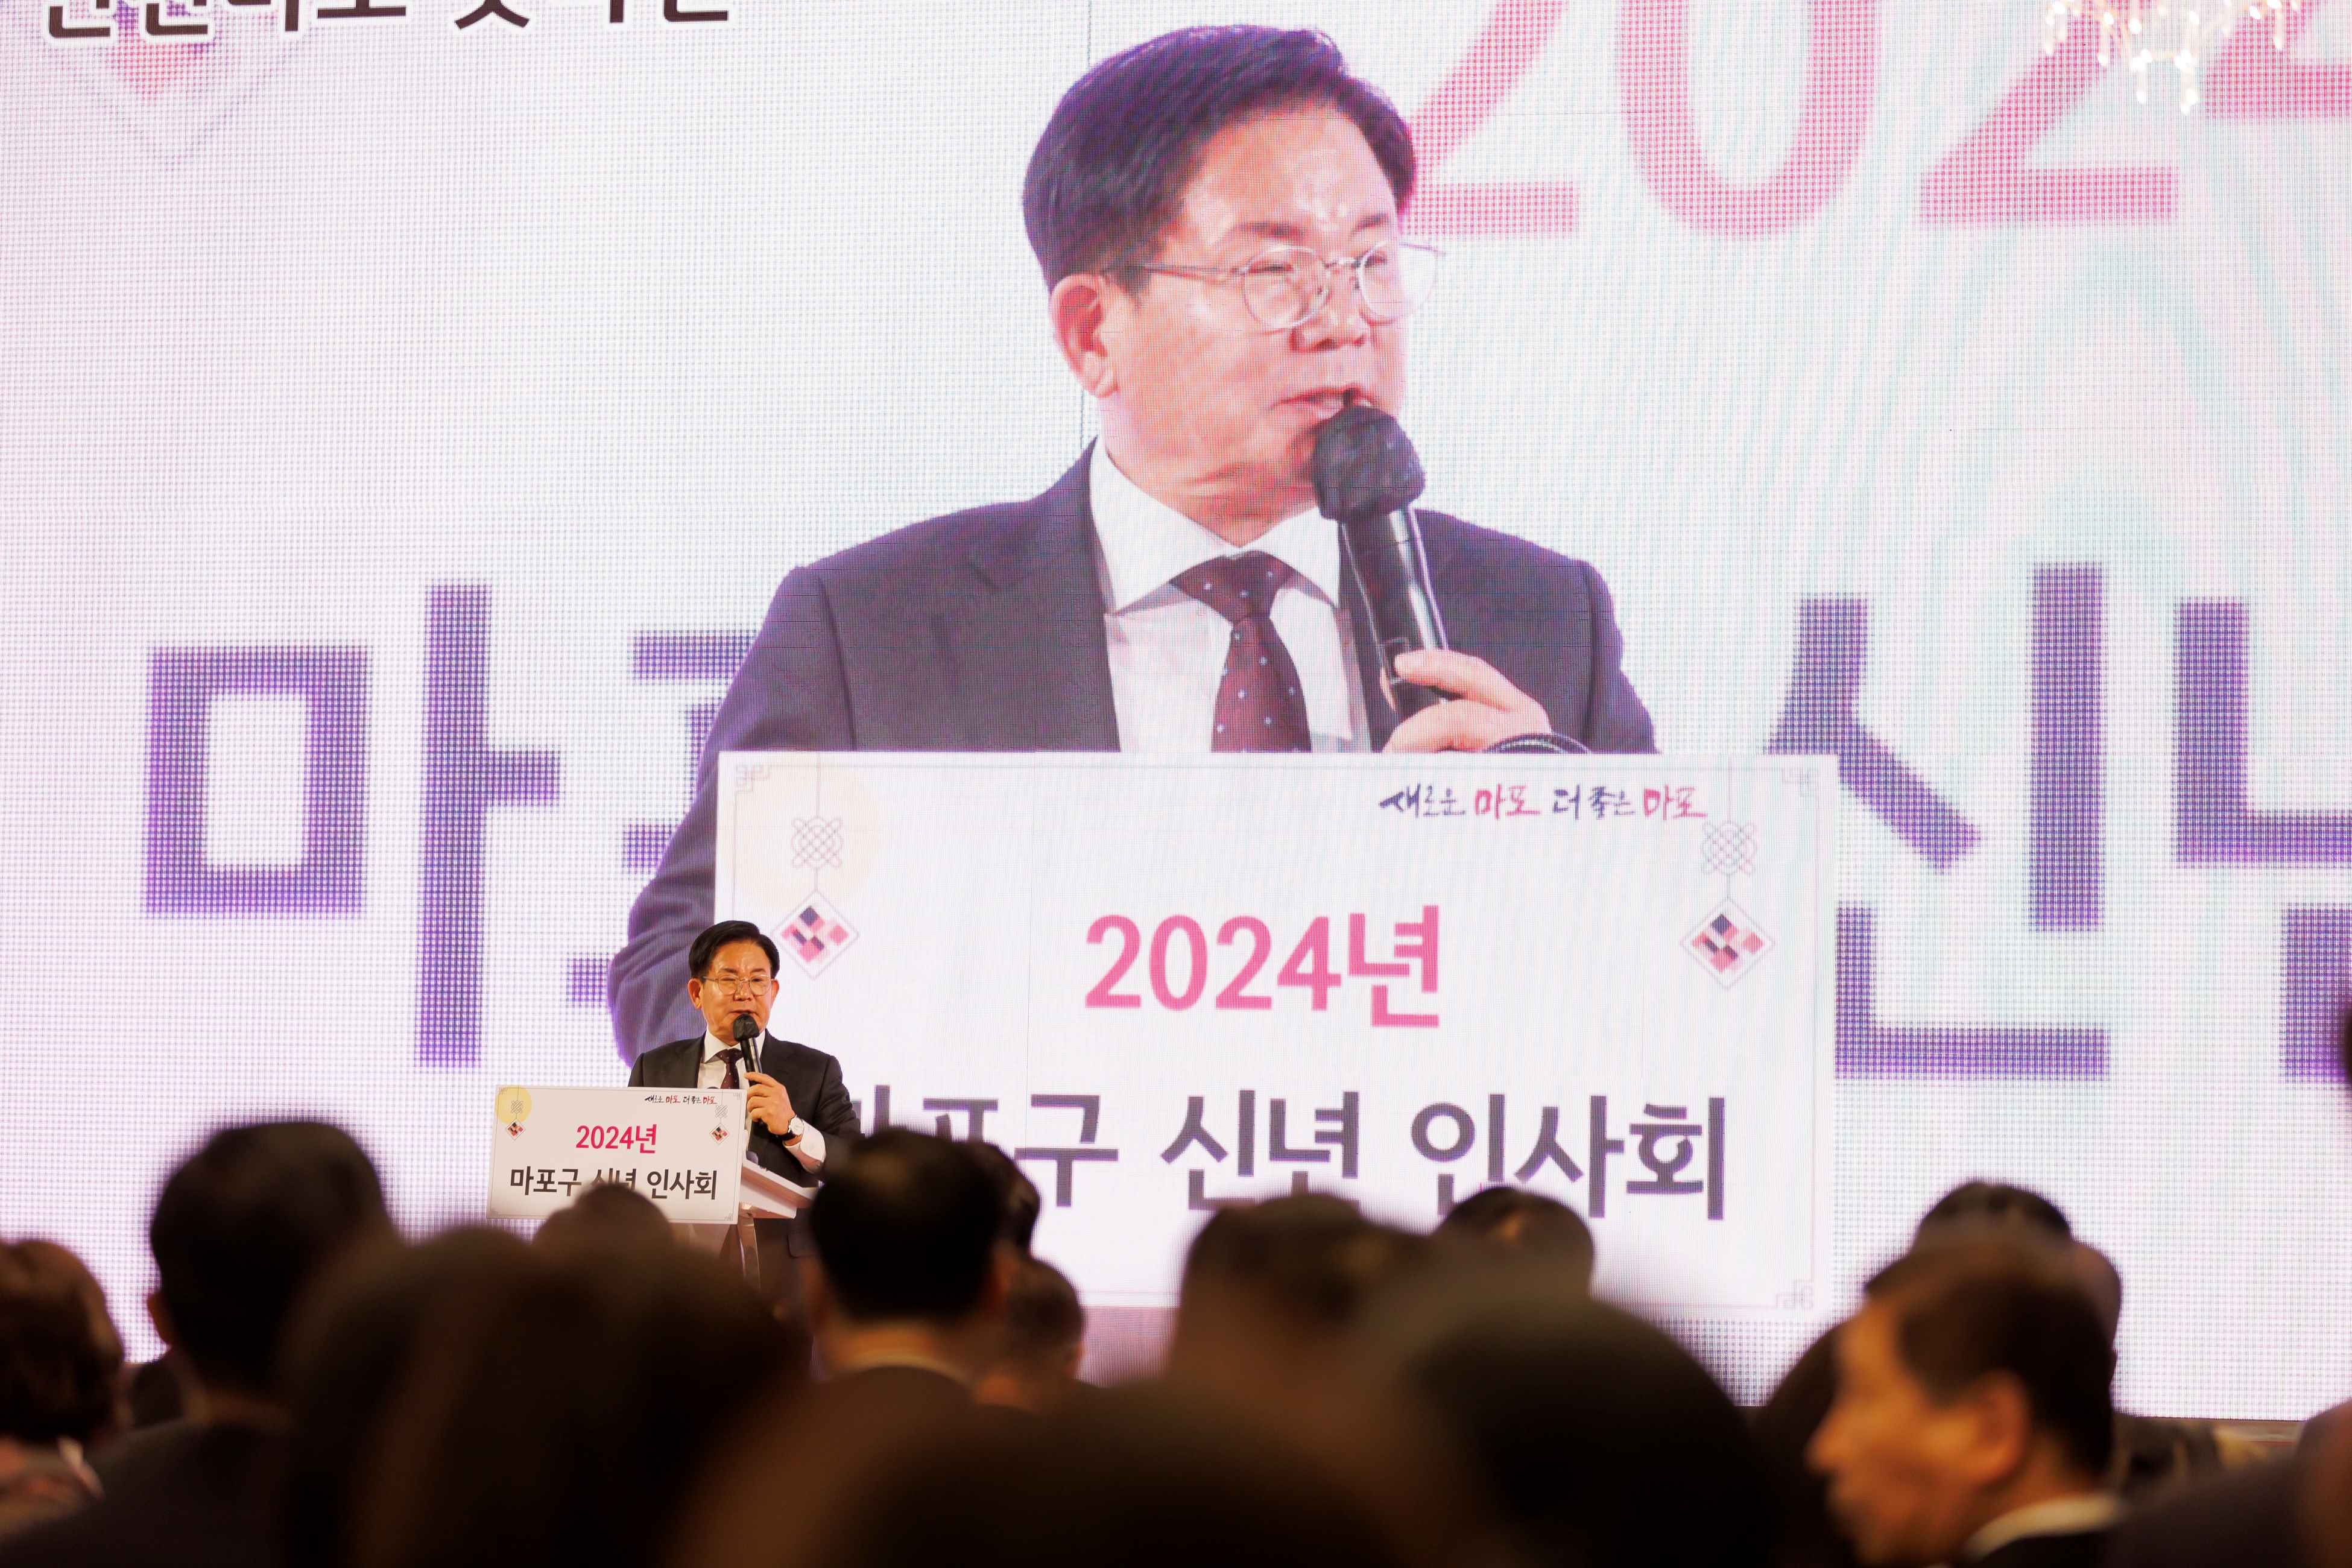 박강수 마포구청장이 지난 1월 신년인사회에서 올해 구정 추진 방향을 설명하고 있다./사진제공=마포구